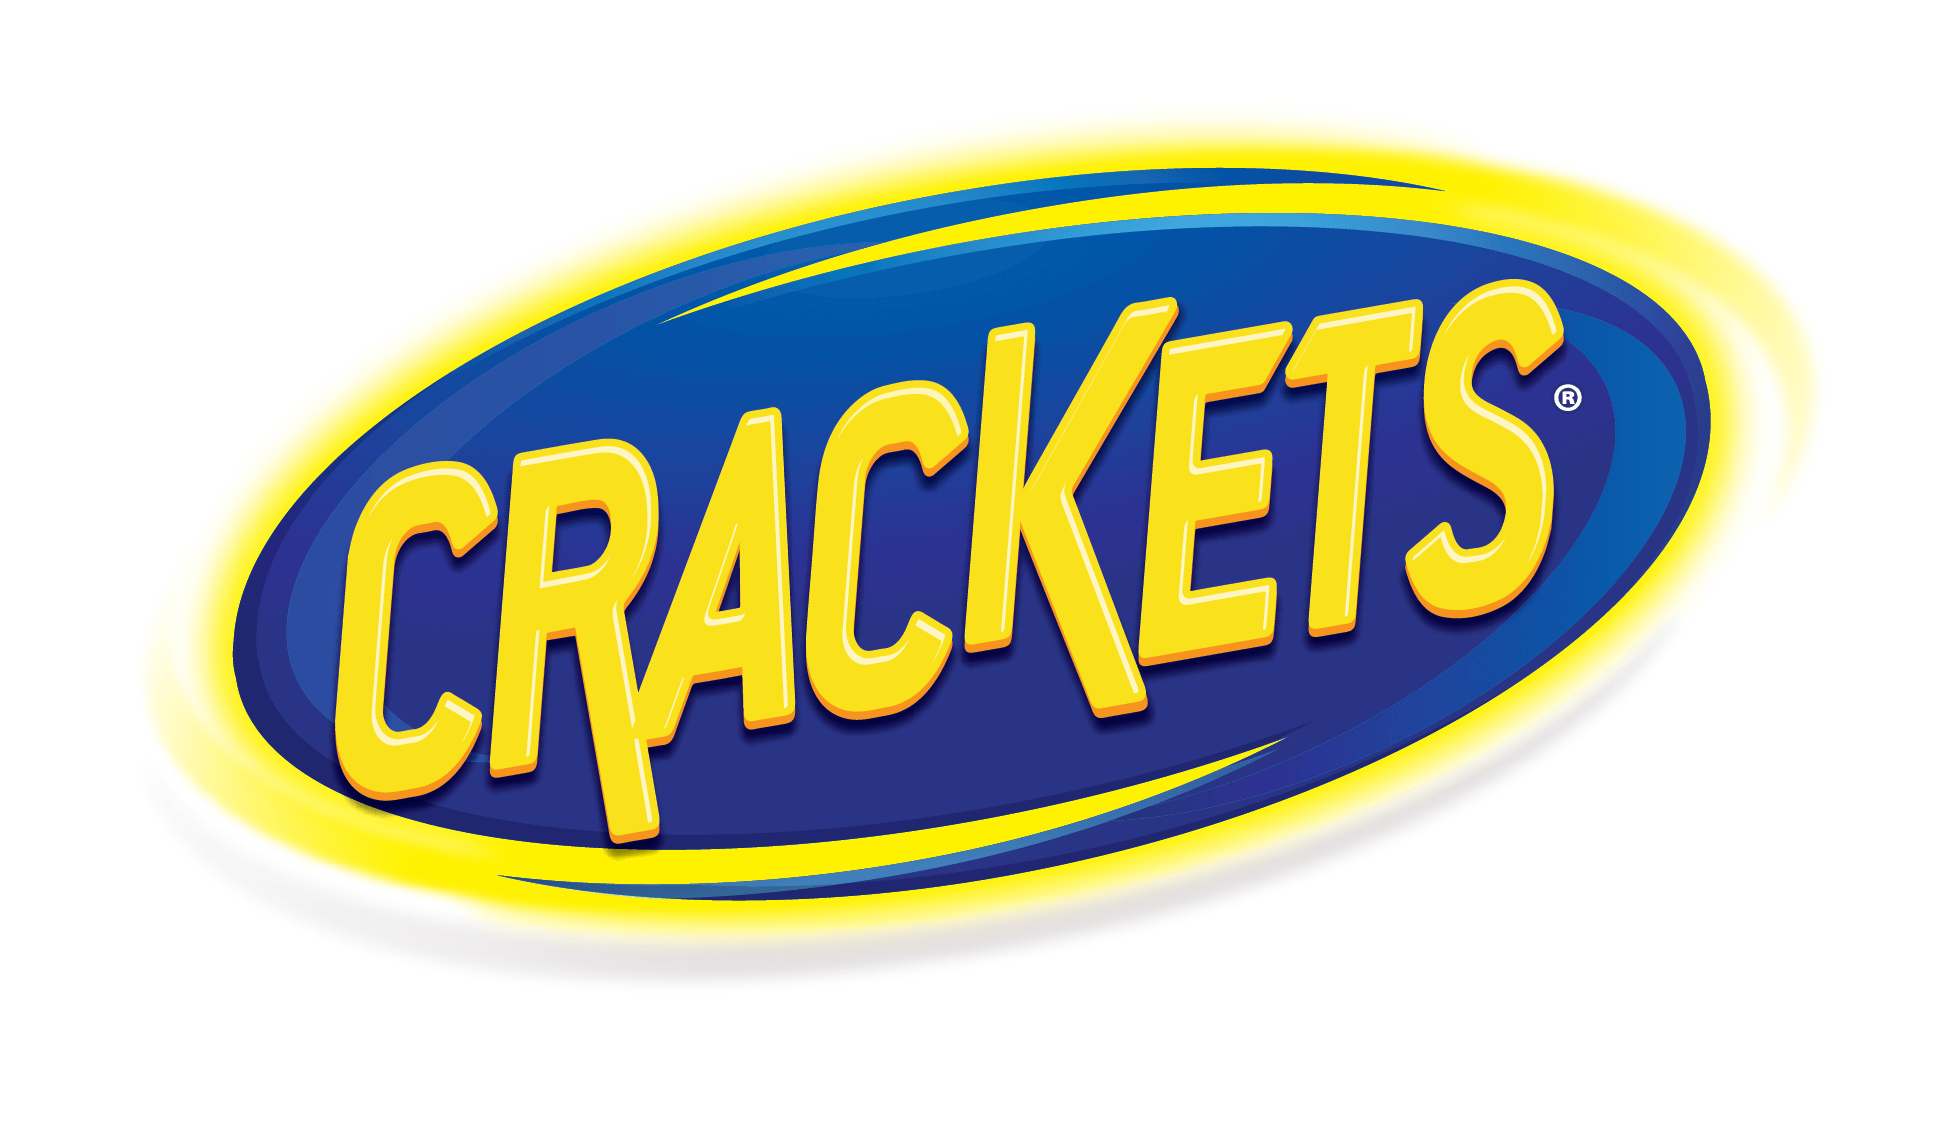 (c) Crackets.com.mx